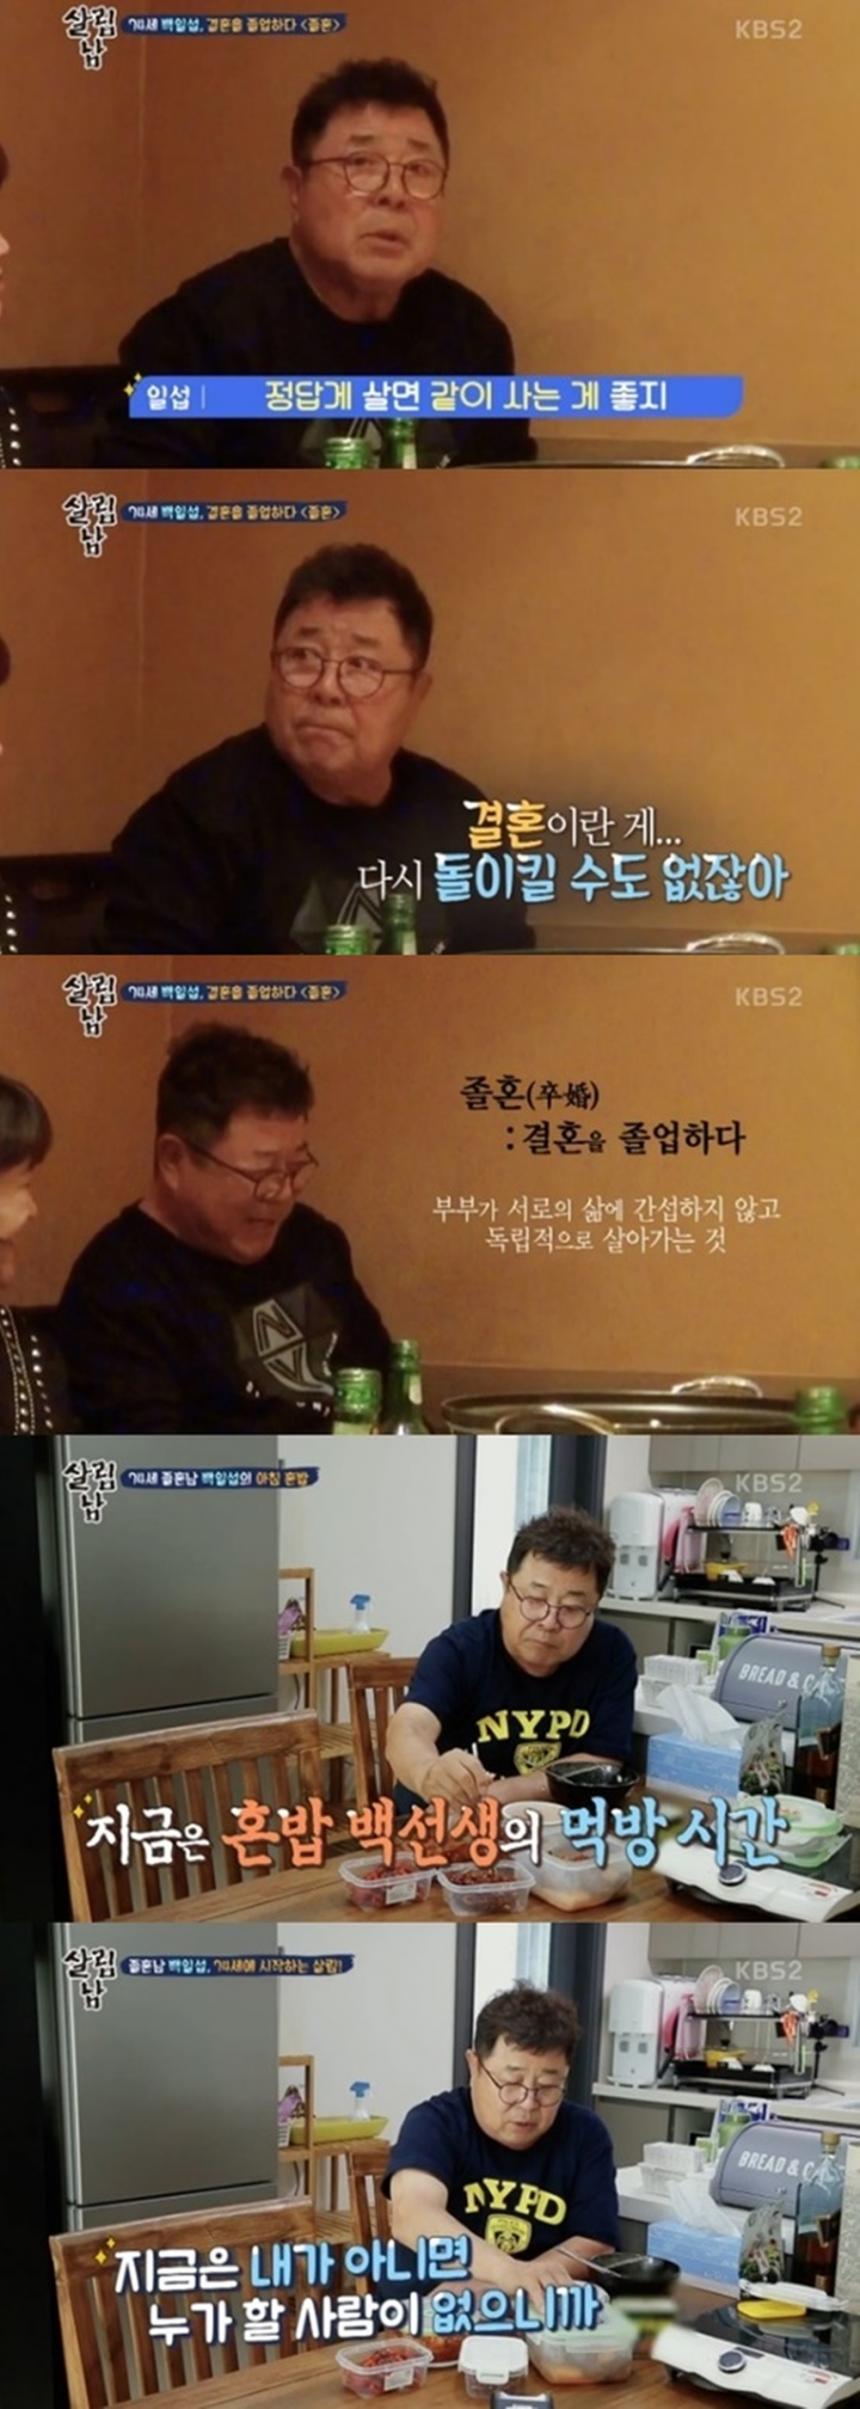 백일섭 / KBS2 ‘살림하는 남자들 시즌2’ 방송 캡처